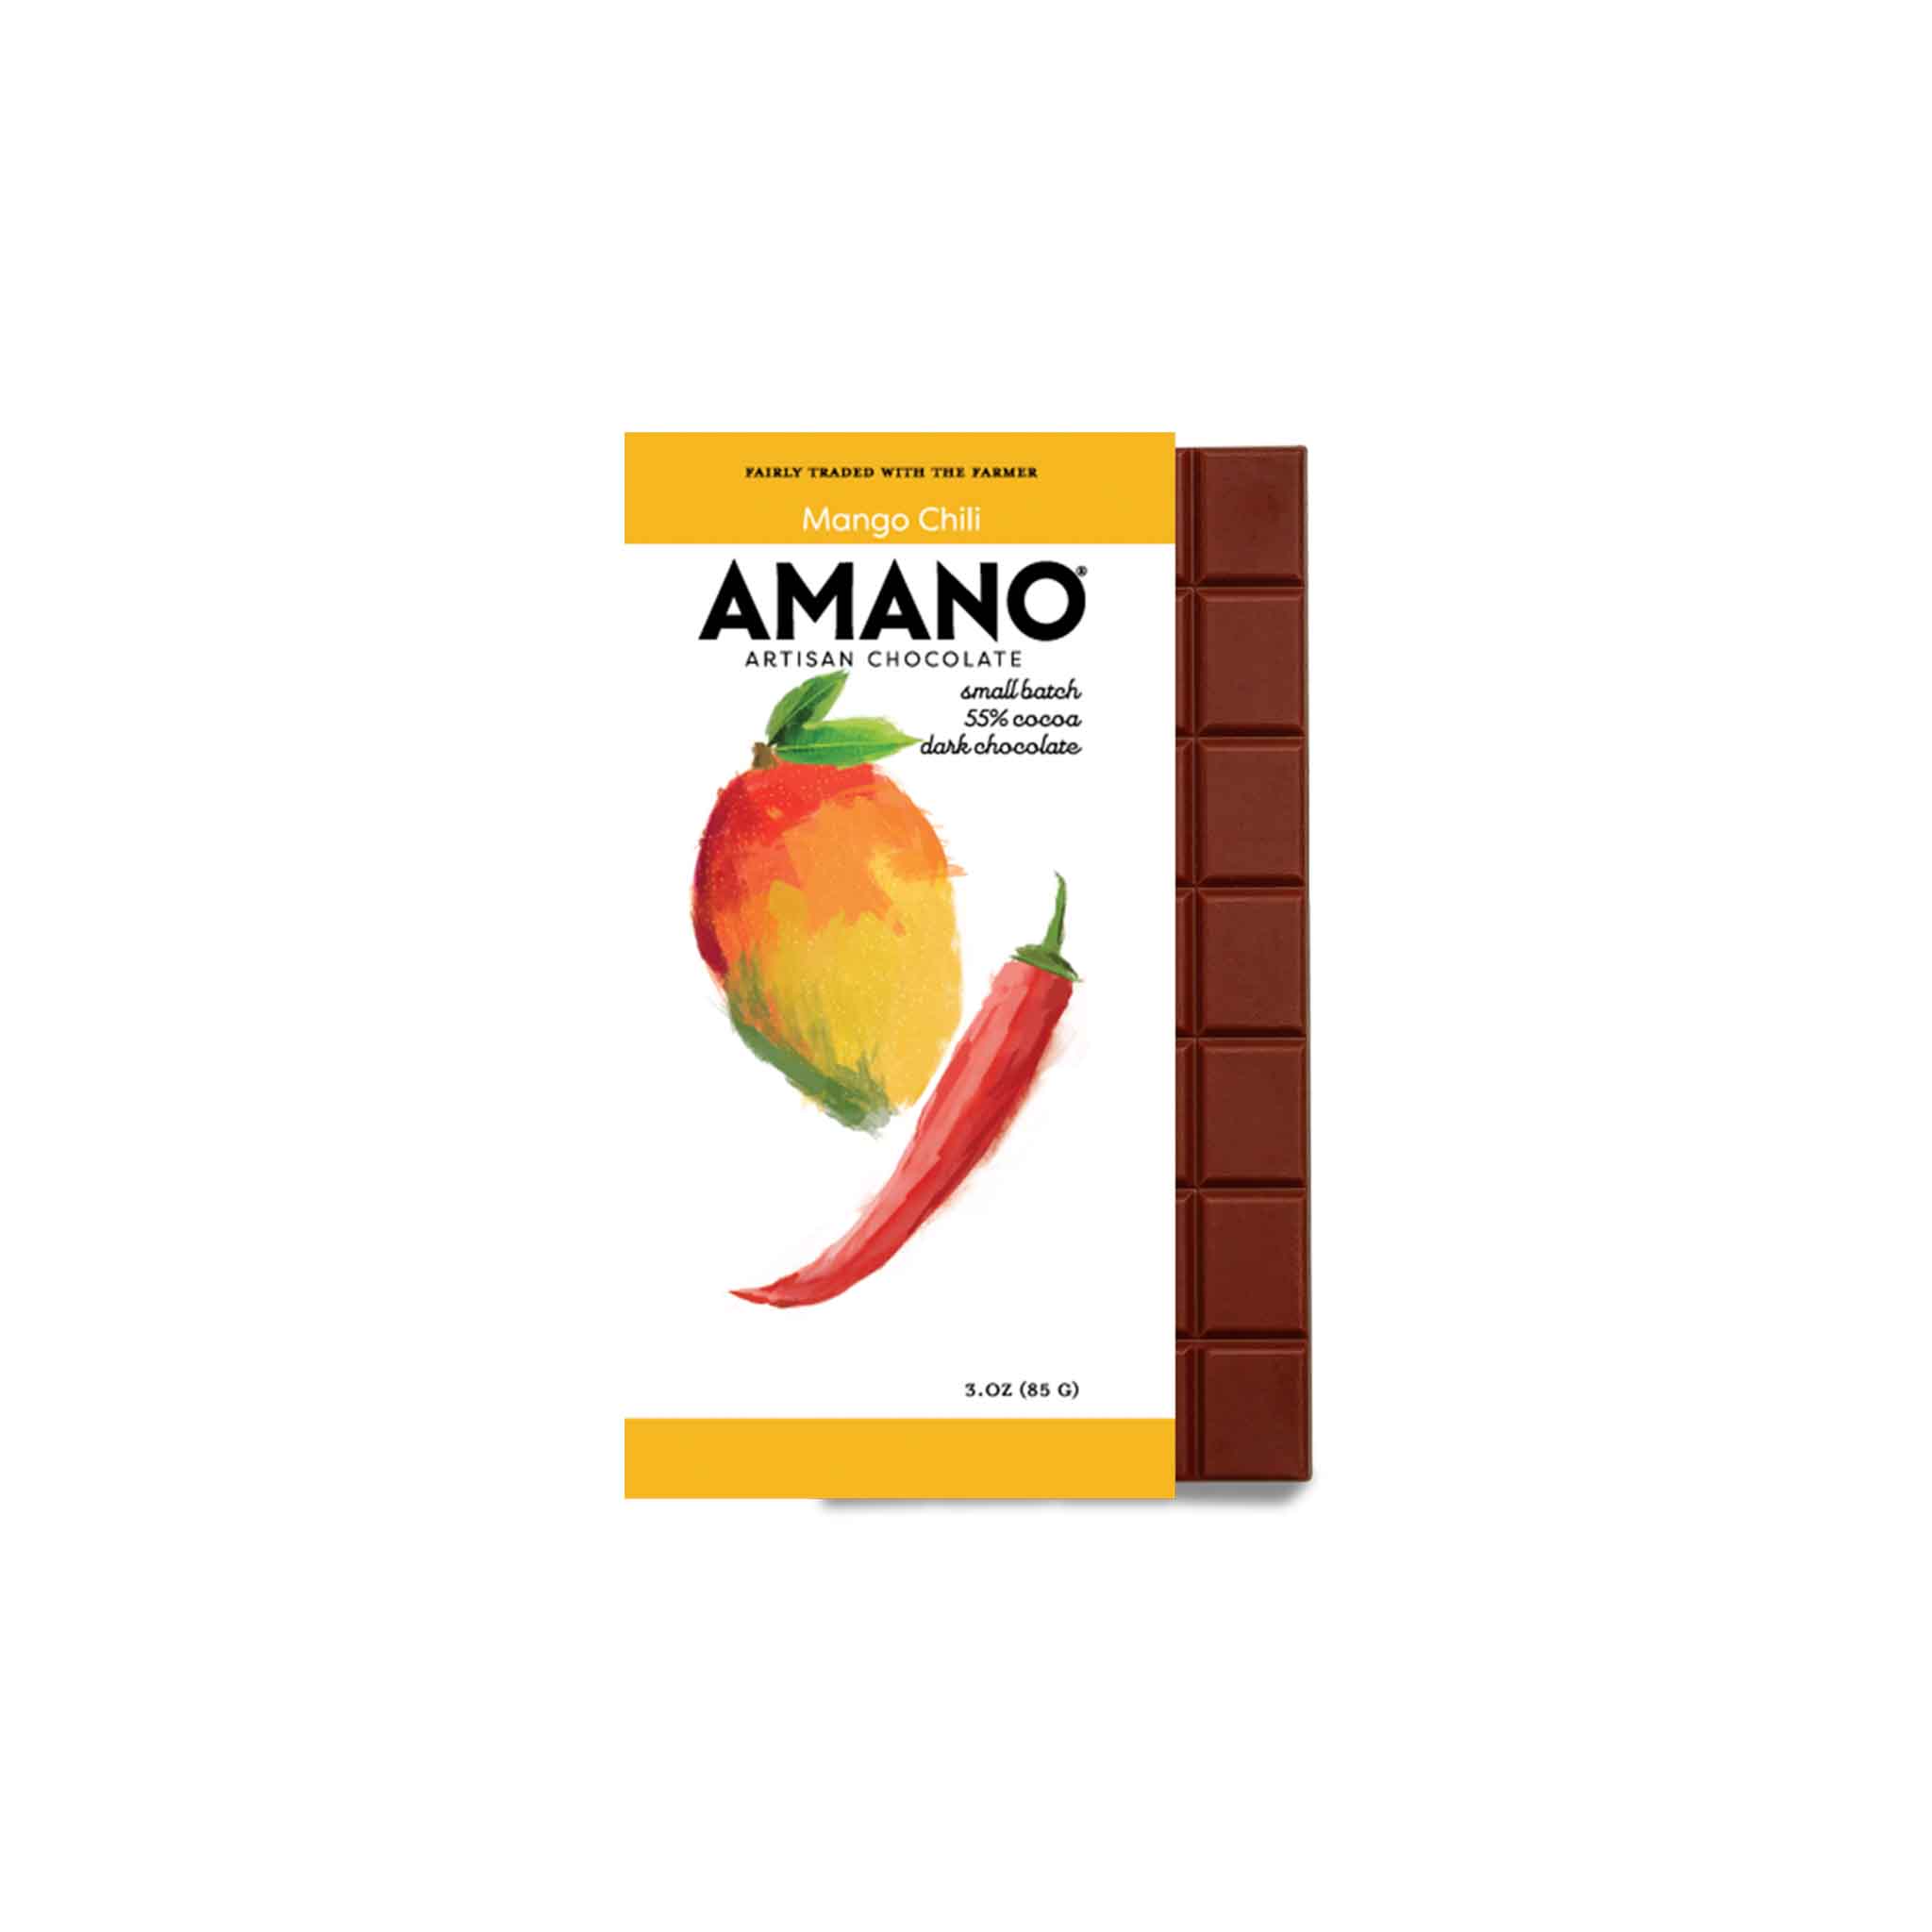 AMANO MANGO CHILI 55% DARK CHOCOLATE 3oz